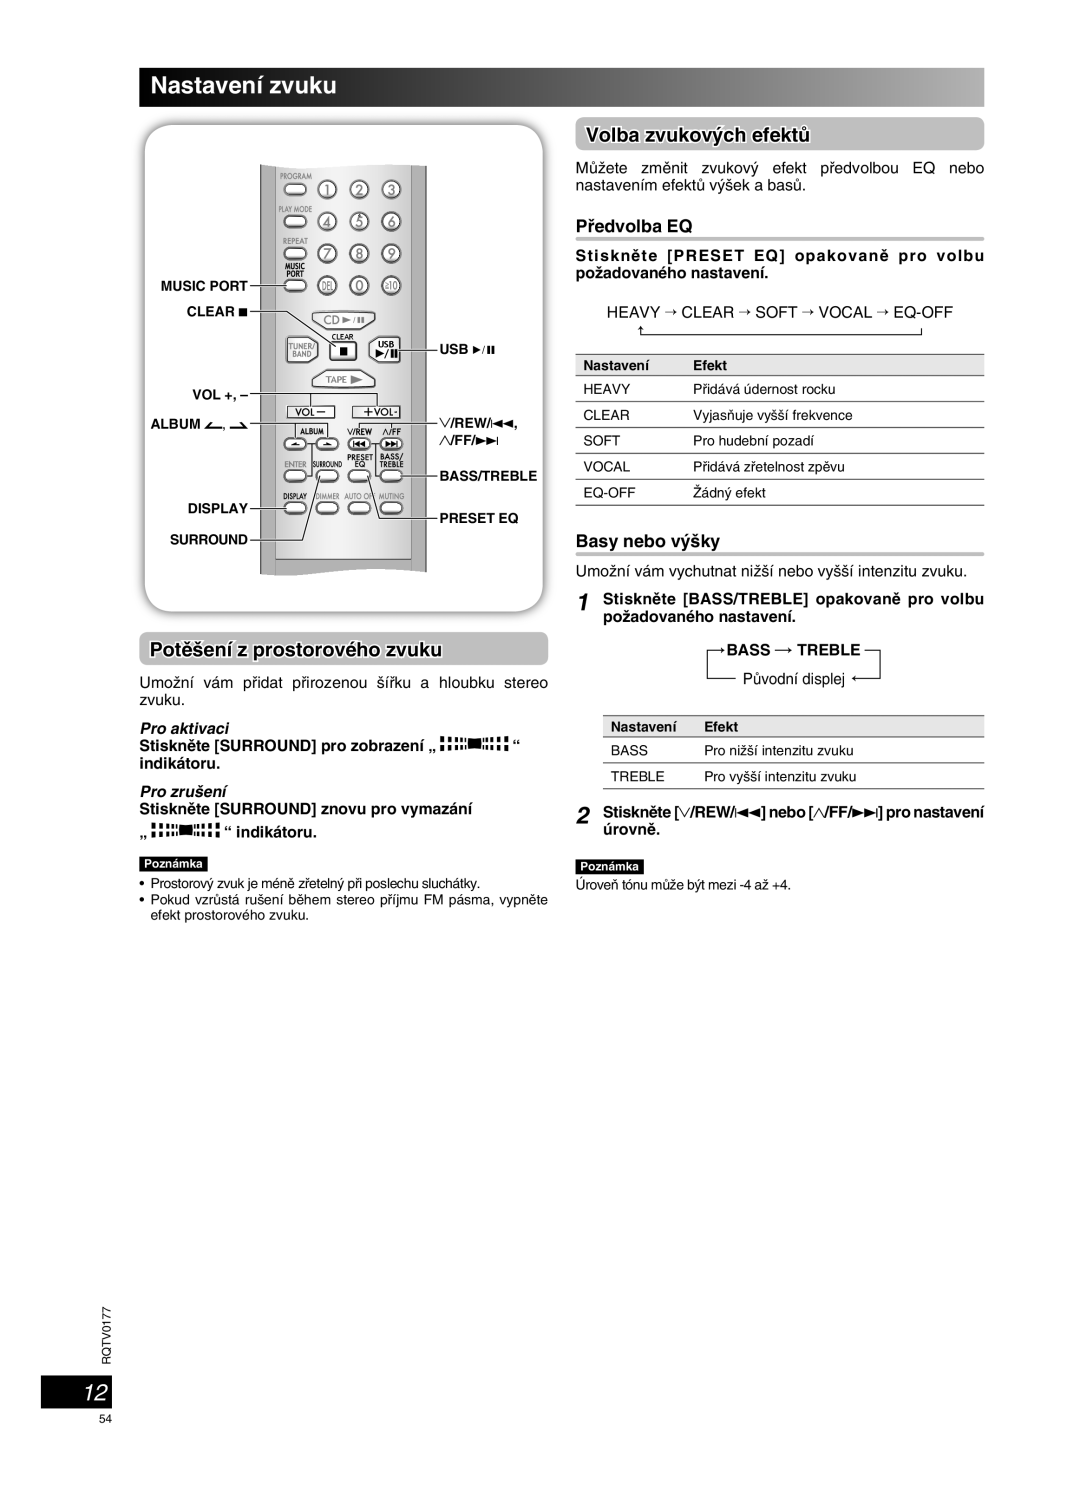 Panasonic SC-PM45 manual Nastavení zvuku, Potû‰ení z prostorového zvuku, Volba zvukov˘ch efektÛ, Pro aktivaci, Pro zru‰ení 